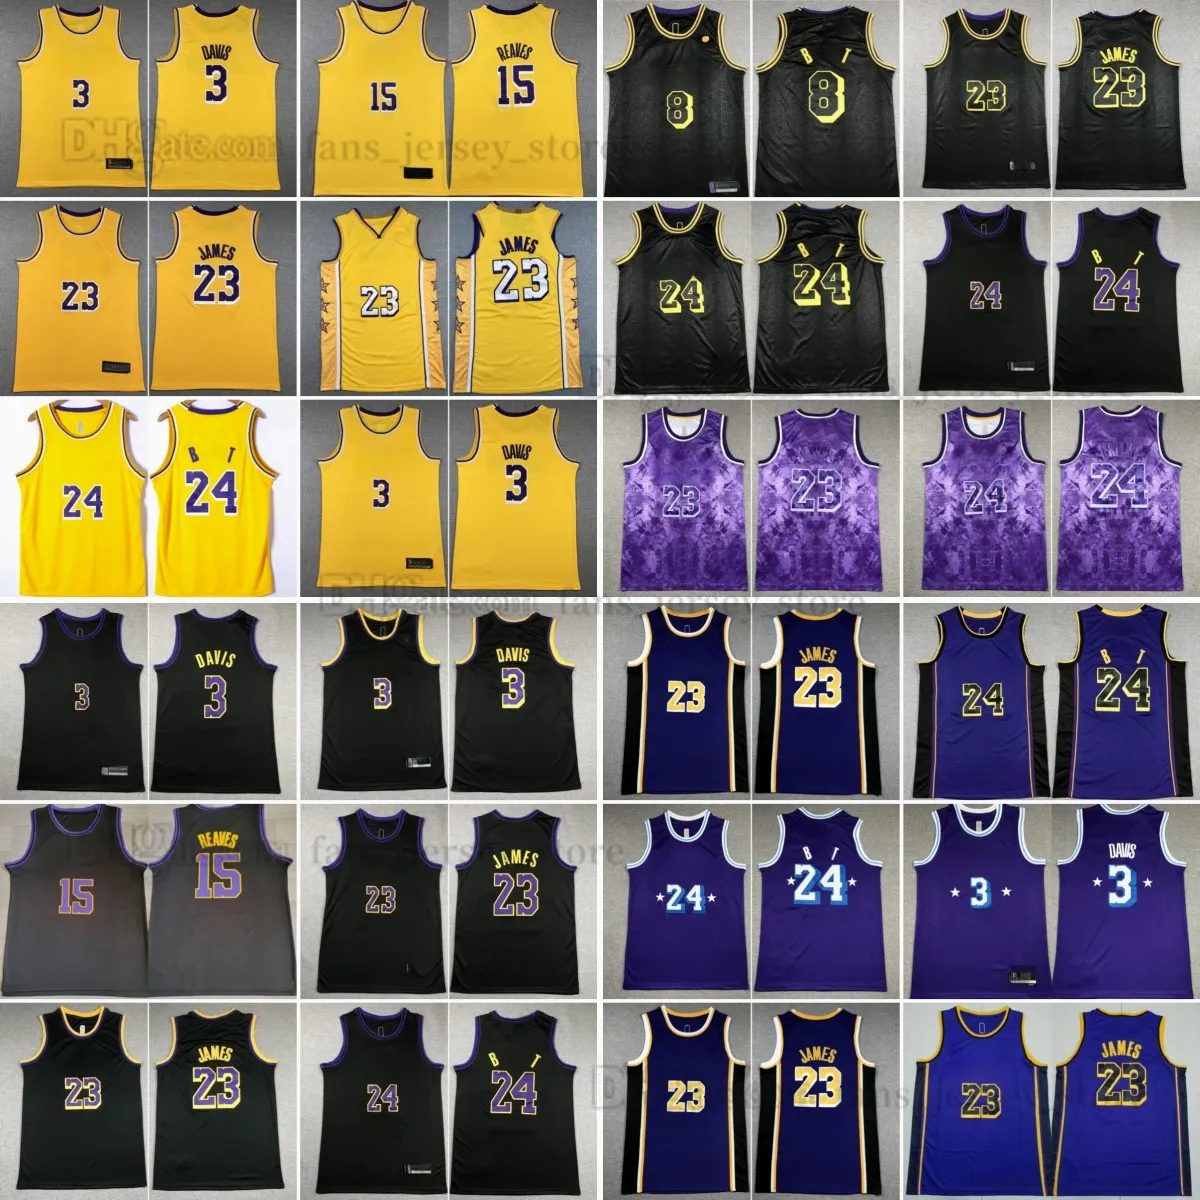 2023-24 Новые баскетбольные трикотажные изделия 3 Энтони 15 Остин Джеймс Дэвис Ривз черно-желтые сшитые майки